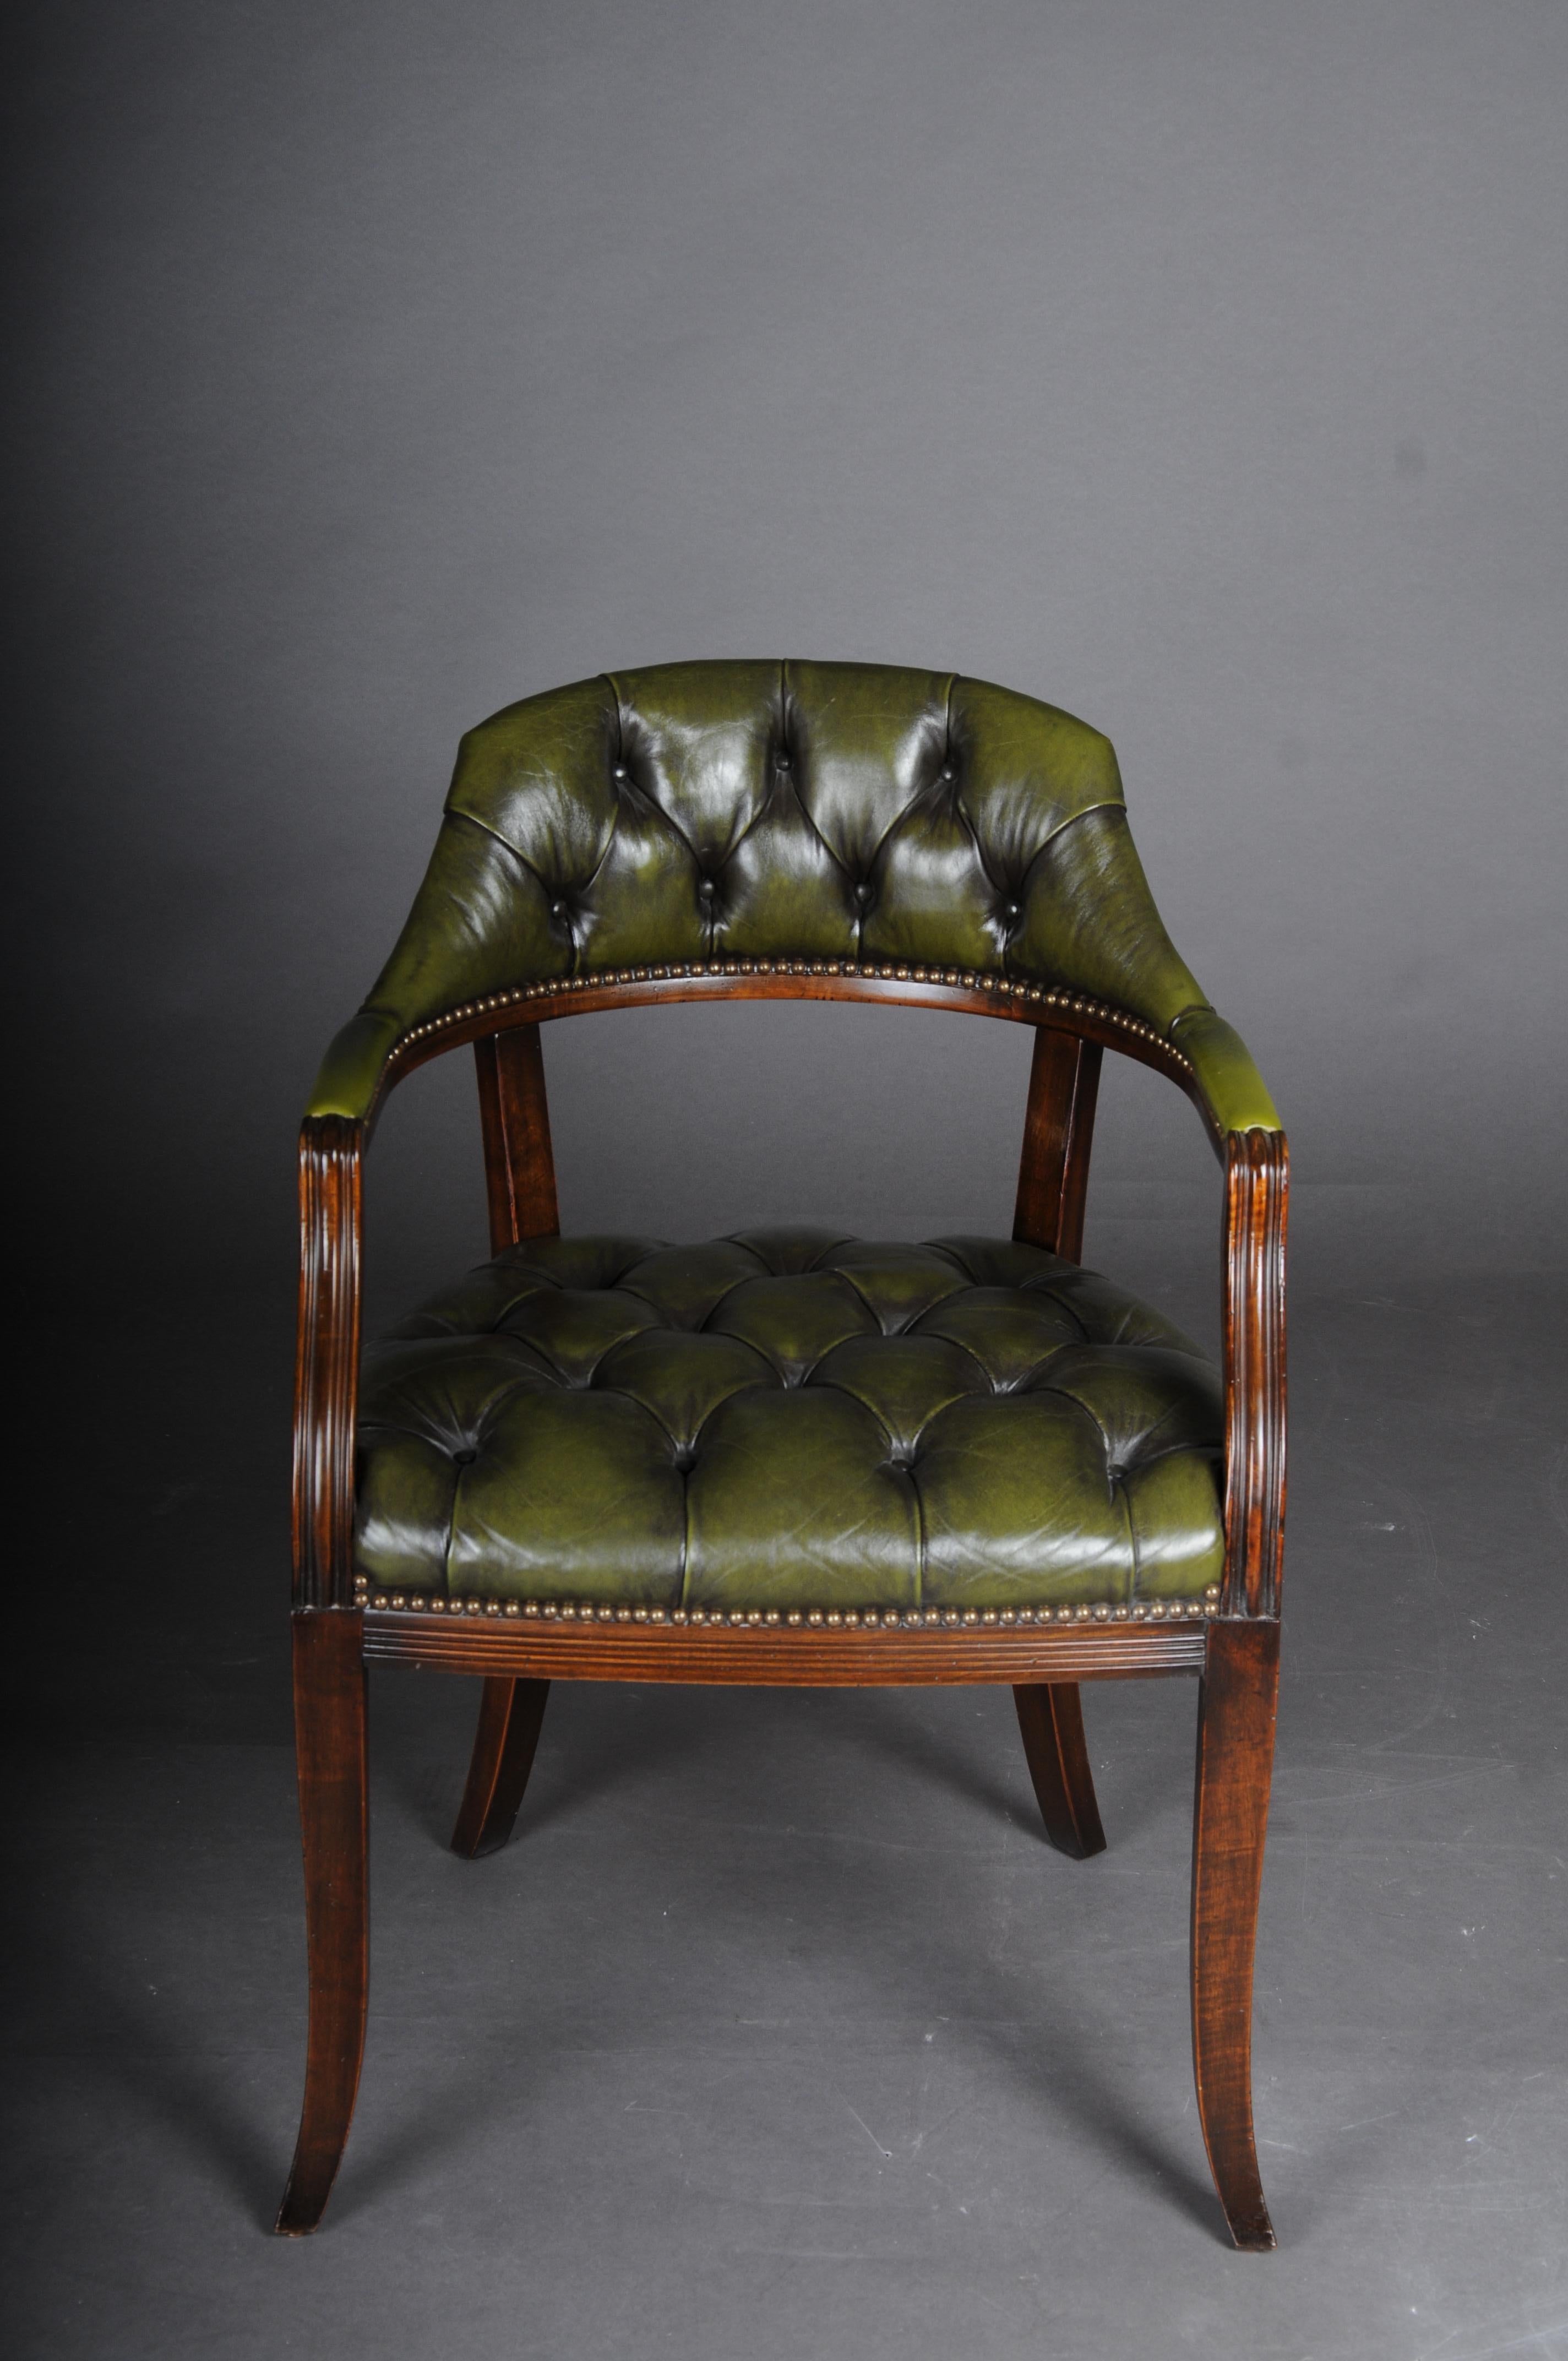 Klassischer englischer Sessel, Chesterfield-Leder, grün

Massivholz, Mahagoni gebeizt. Sitz und Rückenlehne mit grünem Chesterfield-Leder gepolstert.

Sehr hohe Qualität und klassische Form.